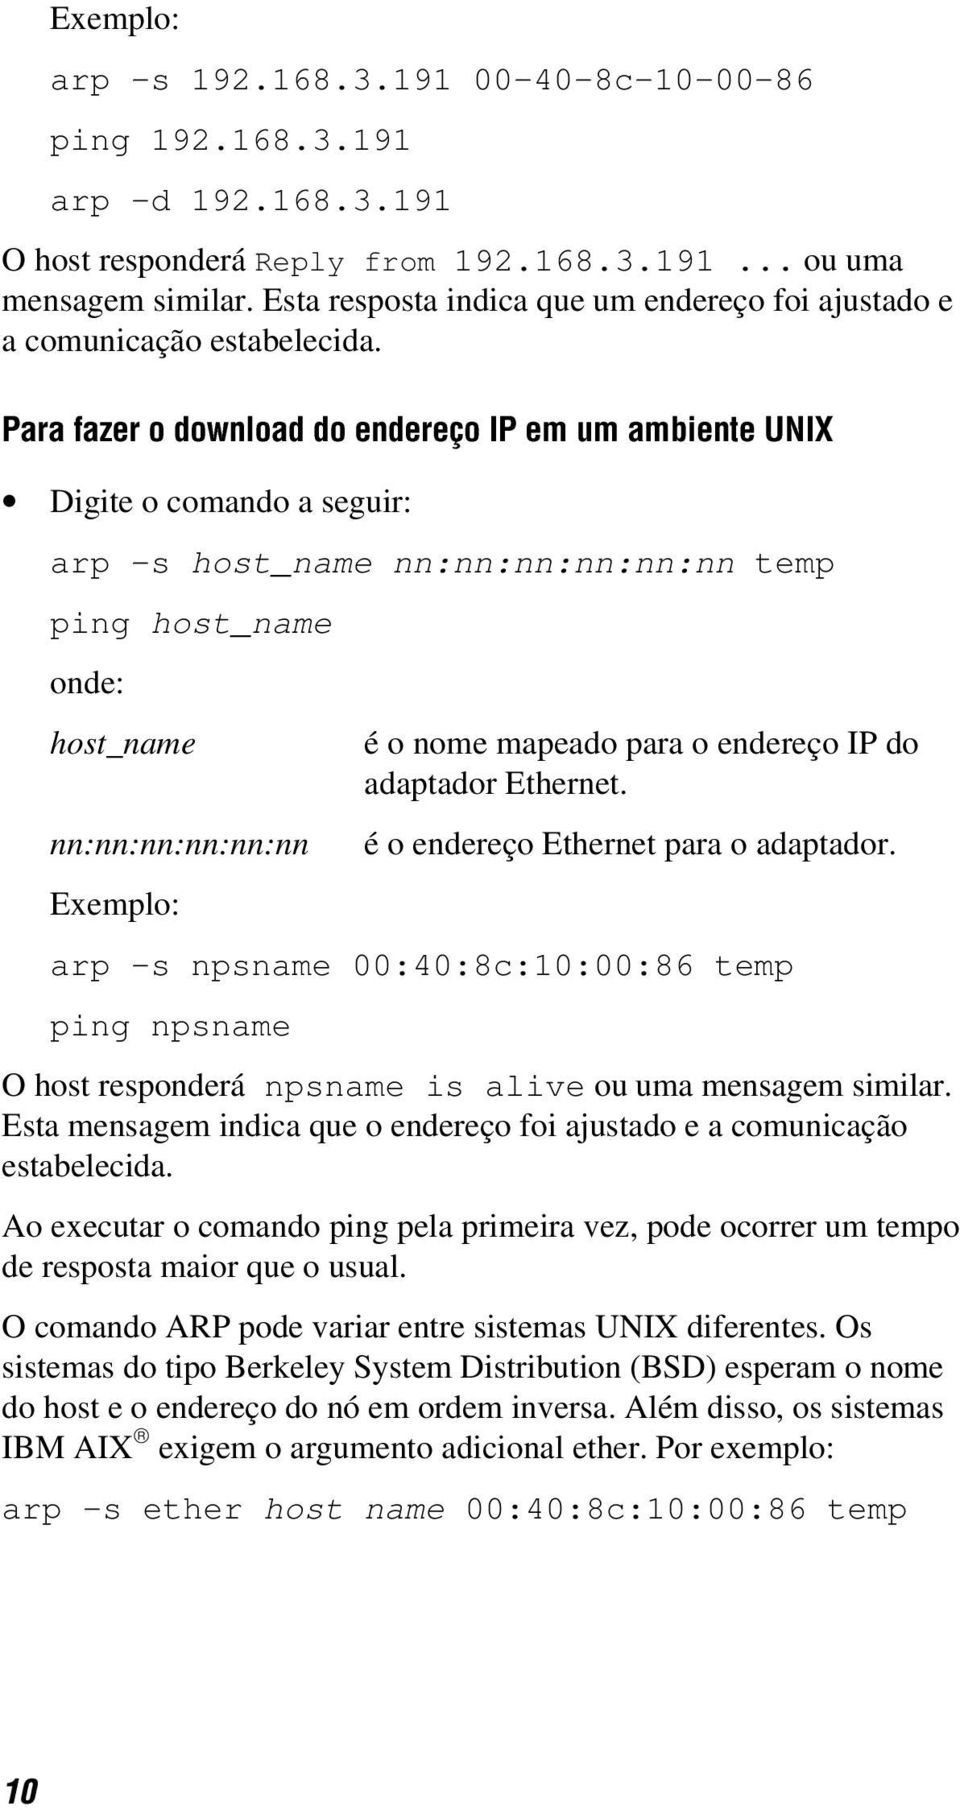 Para fazer o download do endereço IP em um ambiente UNIX Digite o comando a seguir: arp -s host_name nn:nn:nn:nn:nn:nn temp ping host_name onde: host_name é o nome mapeado para o endereço IP do